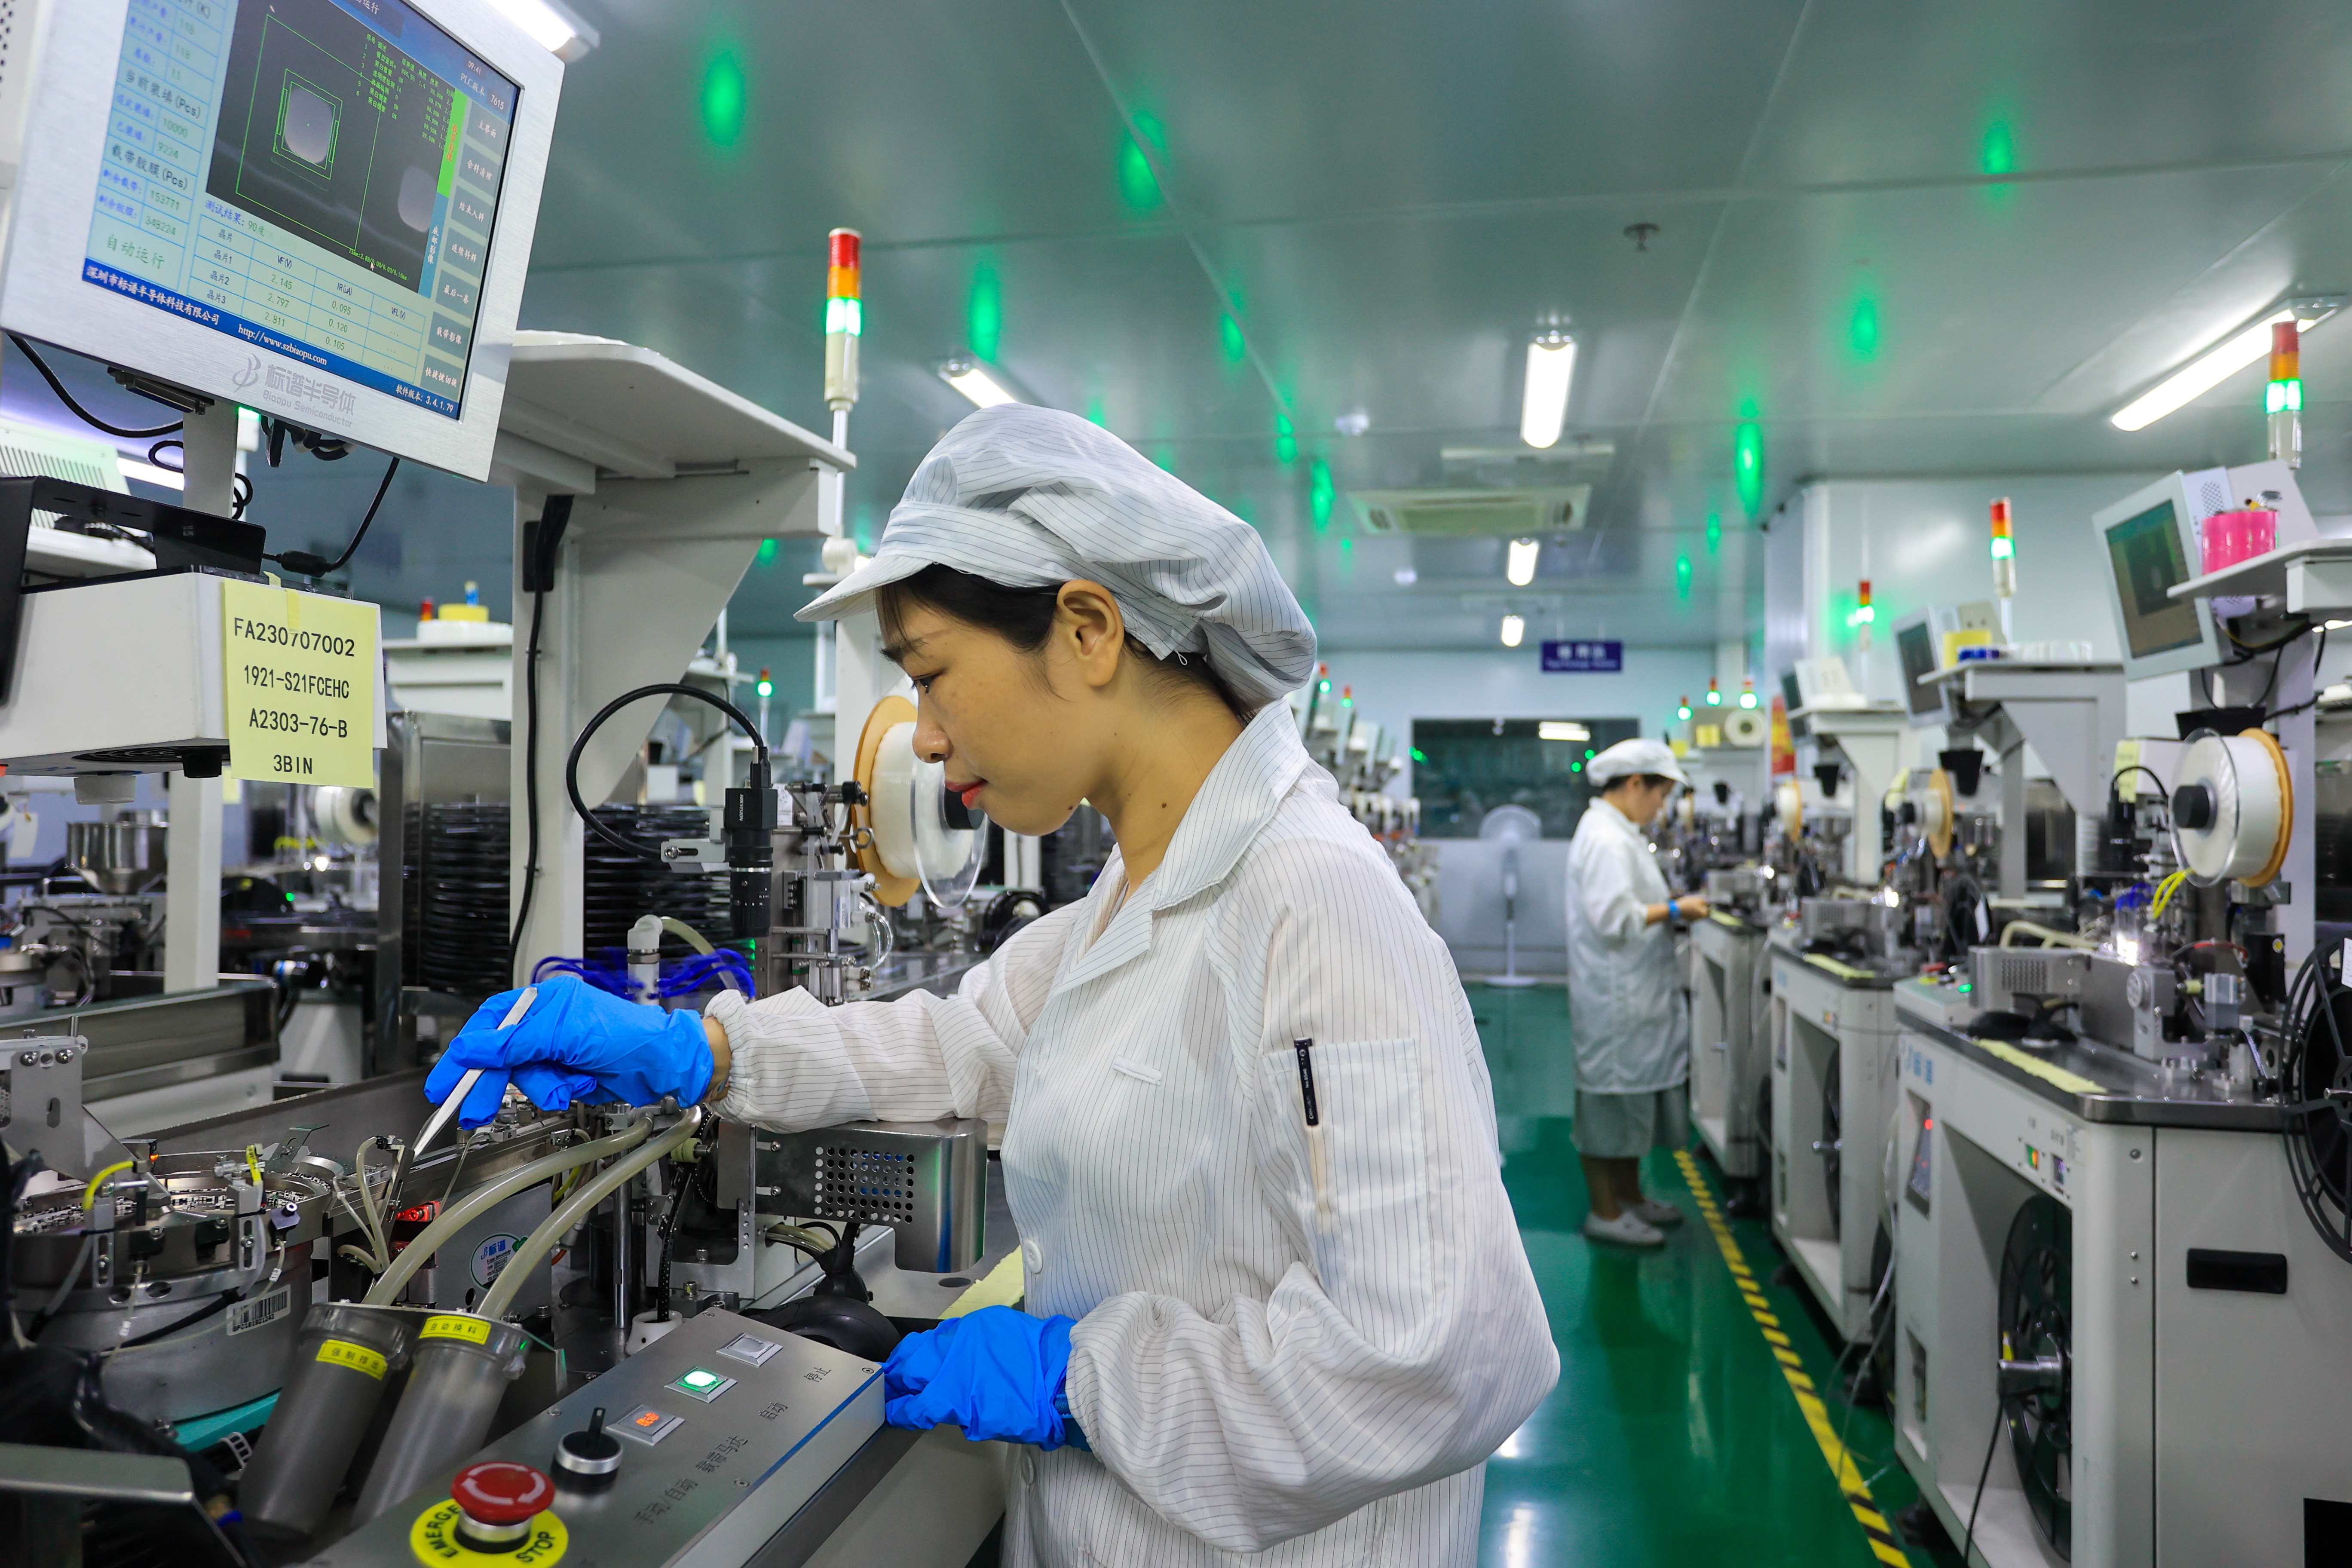 في ورشة الإنتاج لشركة روي شنغ للتكنولوجيا في مقاطعة جيانغشي، يعمل العمال على خط الإنتاج الذكي لتسليم الطلبيات الكثيفة في موعدها المحدد. وي دونغ شنغ / صورة الشعب.